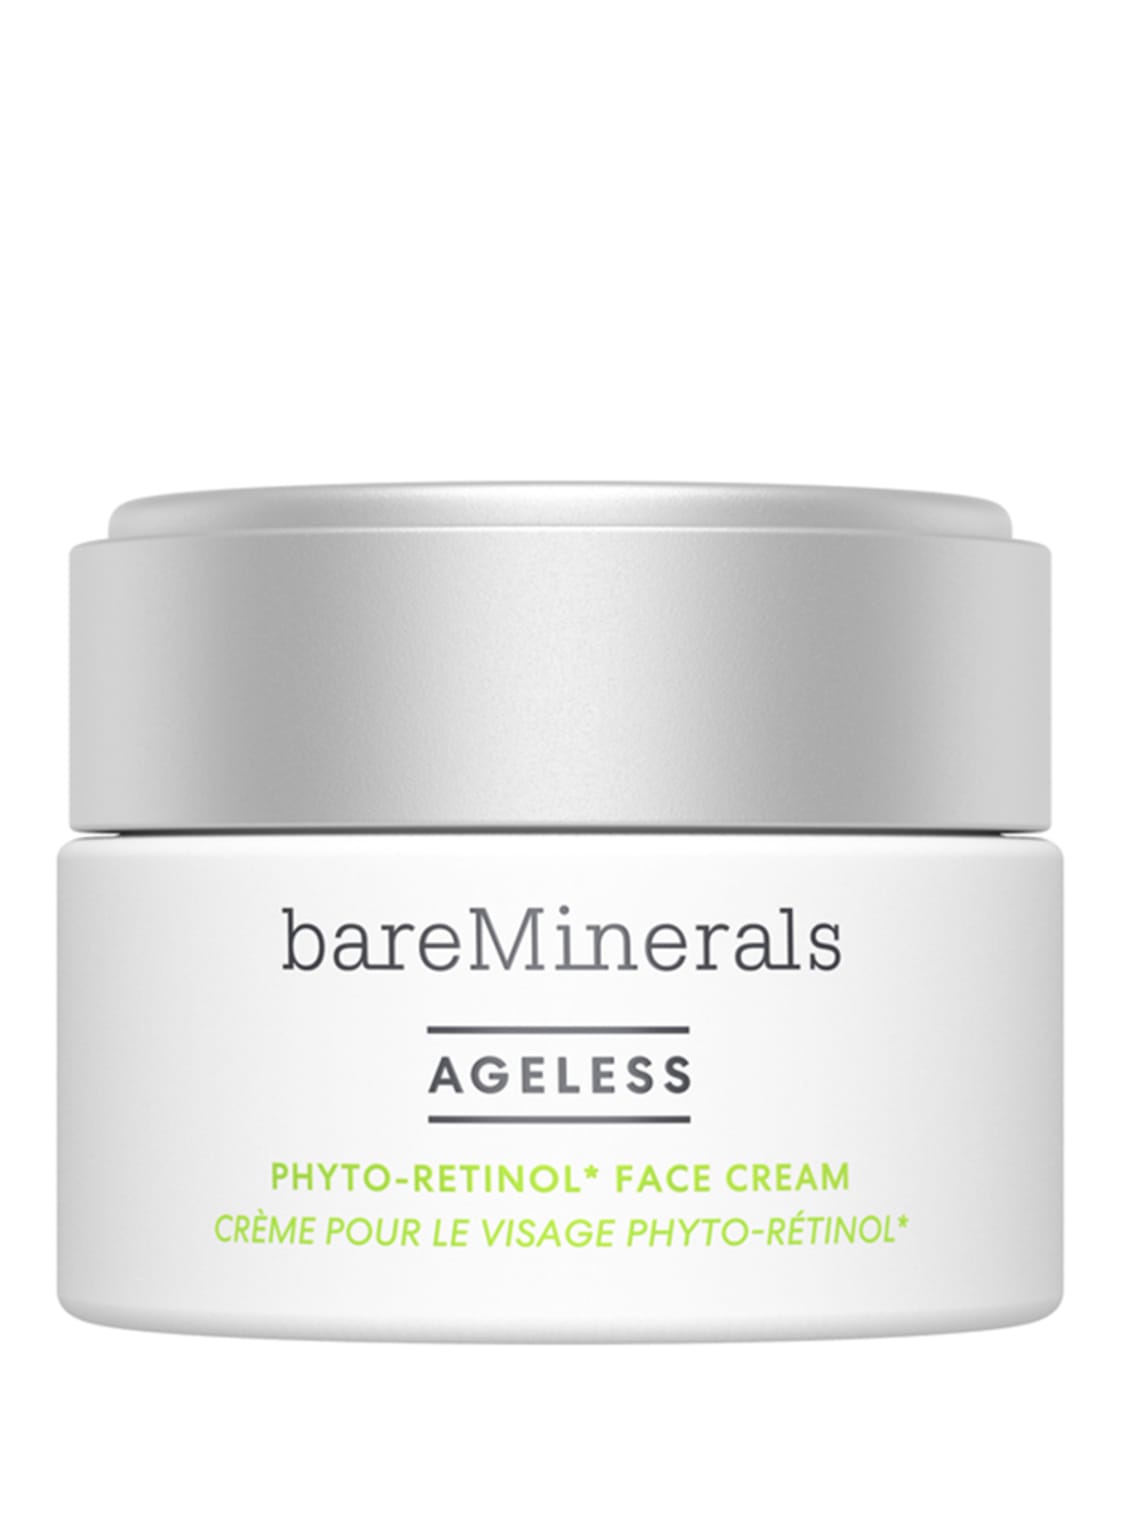 Bareminerals Ageless Phyto-Retinol Face Cream 50 g von bareMinerals